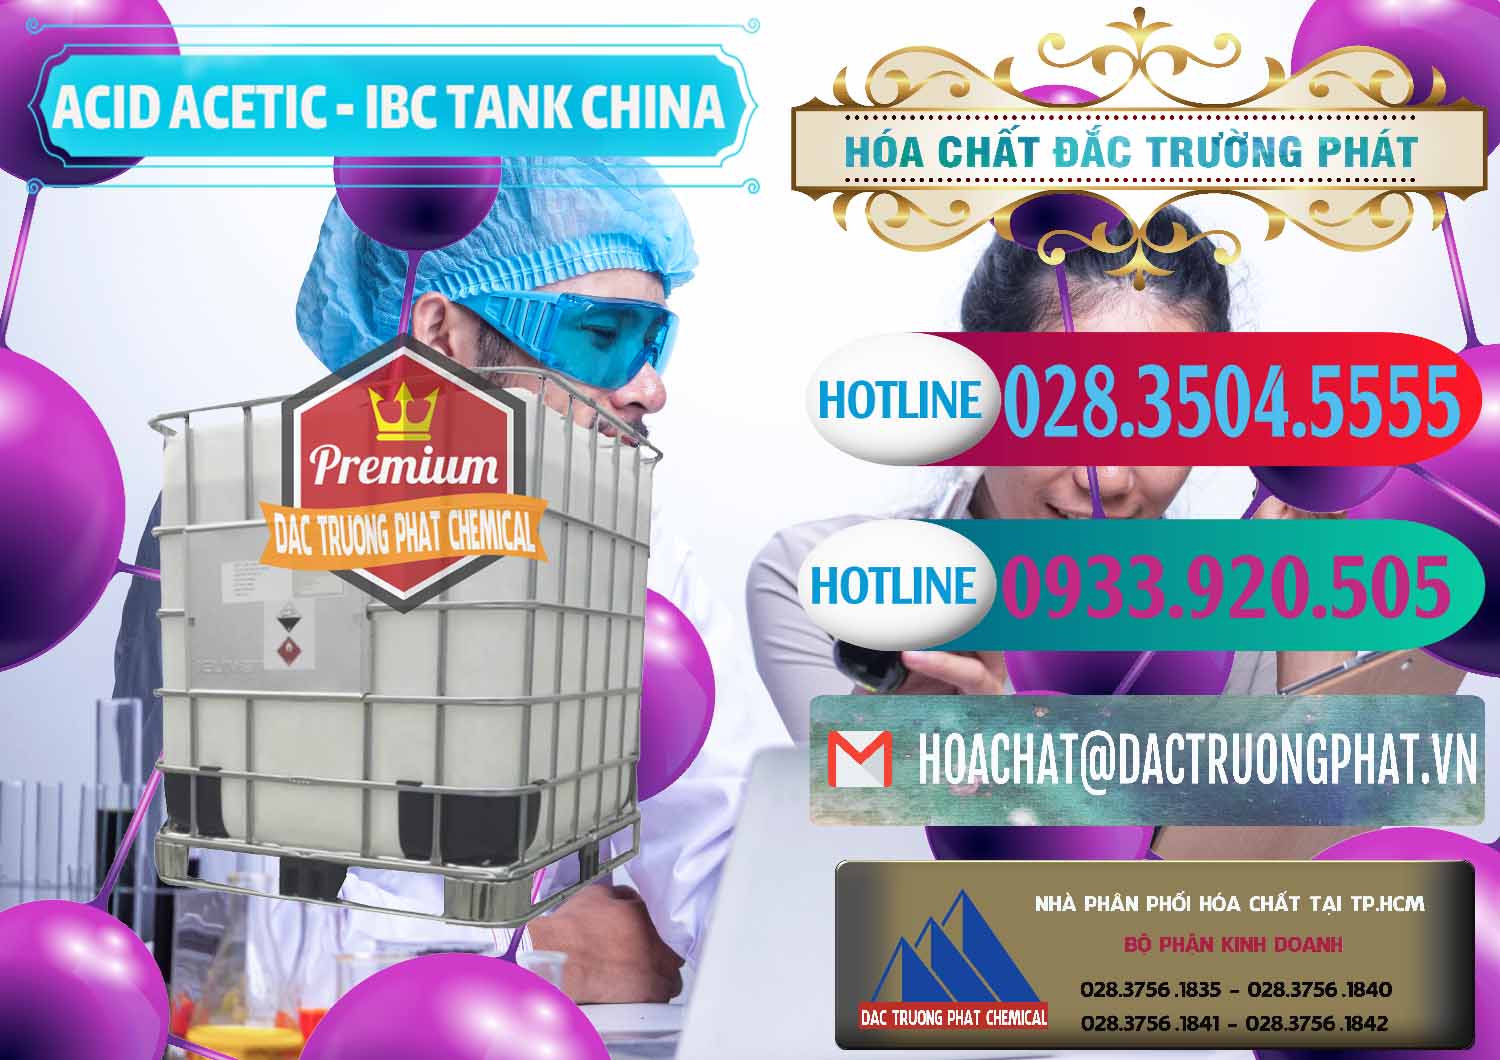 Cty chuyên nhập khẩu - bán Acetic Acid – Axit Acetic Tank Bồn IBC Trung Quốc China - 0443 - Nơi chuyên phân phối và cung ứng hóa chất tại TP.HCM - truongphat.vn